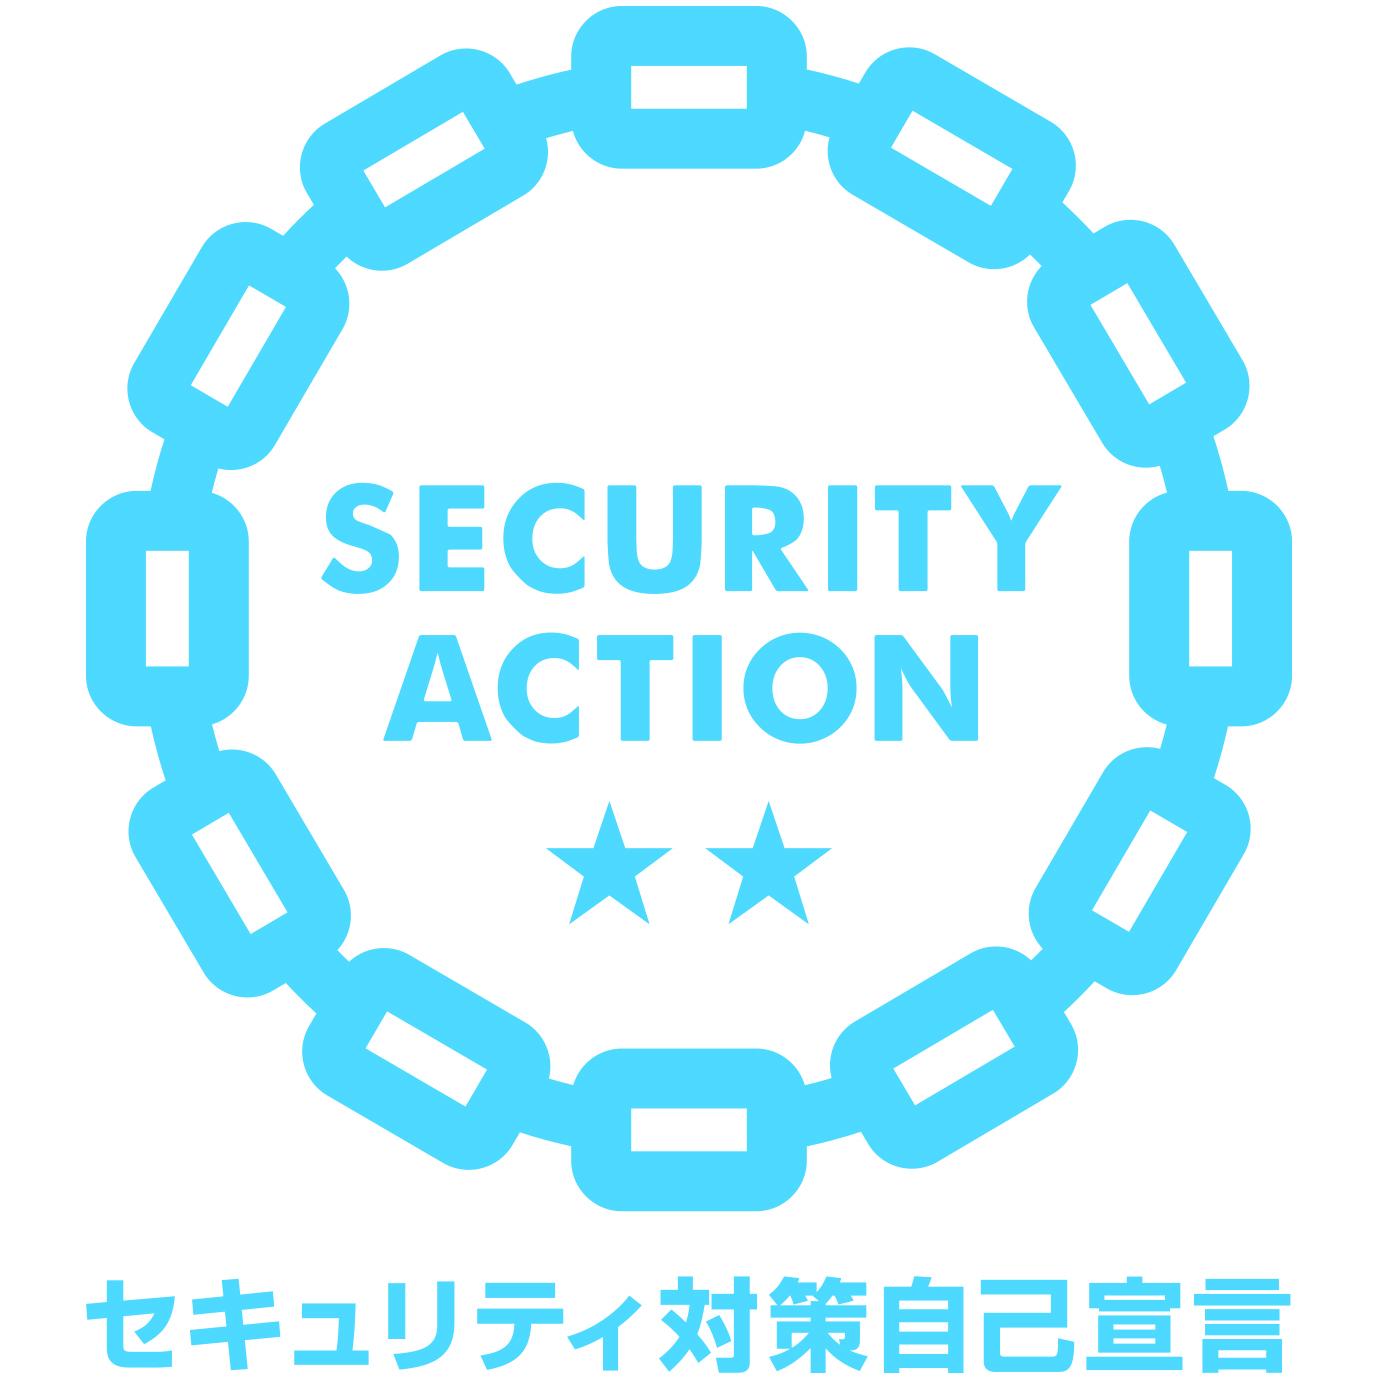 「SECURITY ACTION」二つ星の宣言について